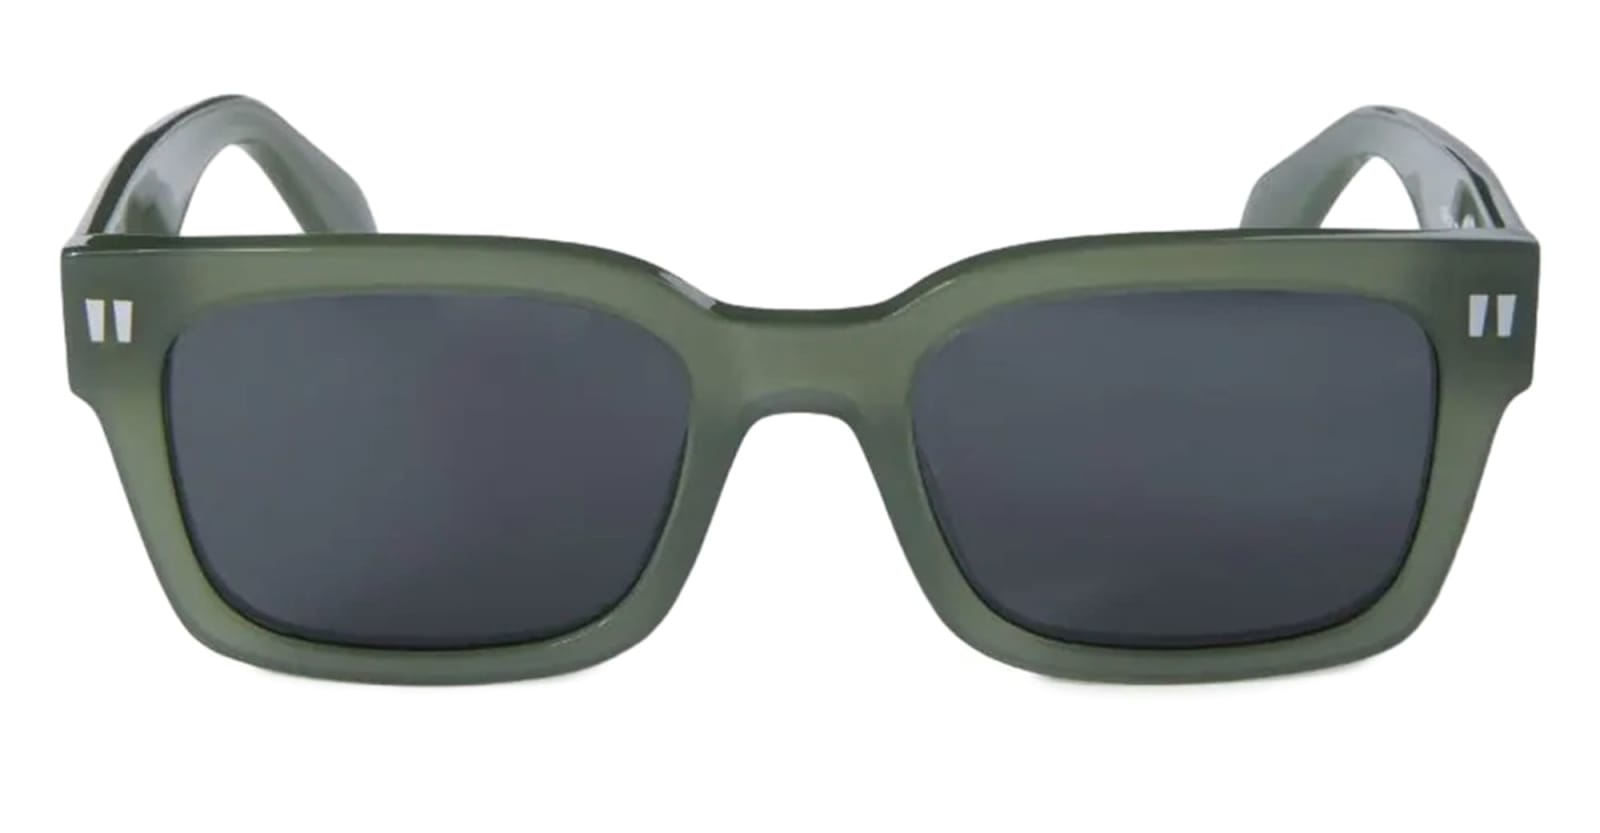 Midland Sunglasses